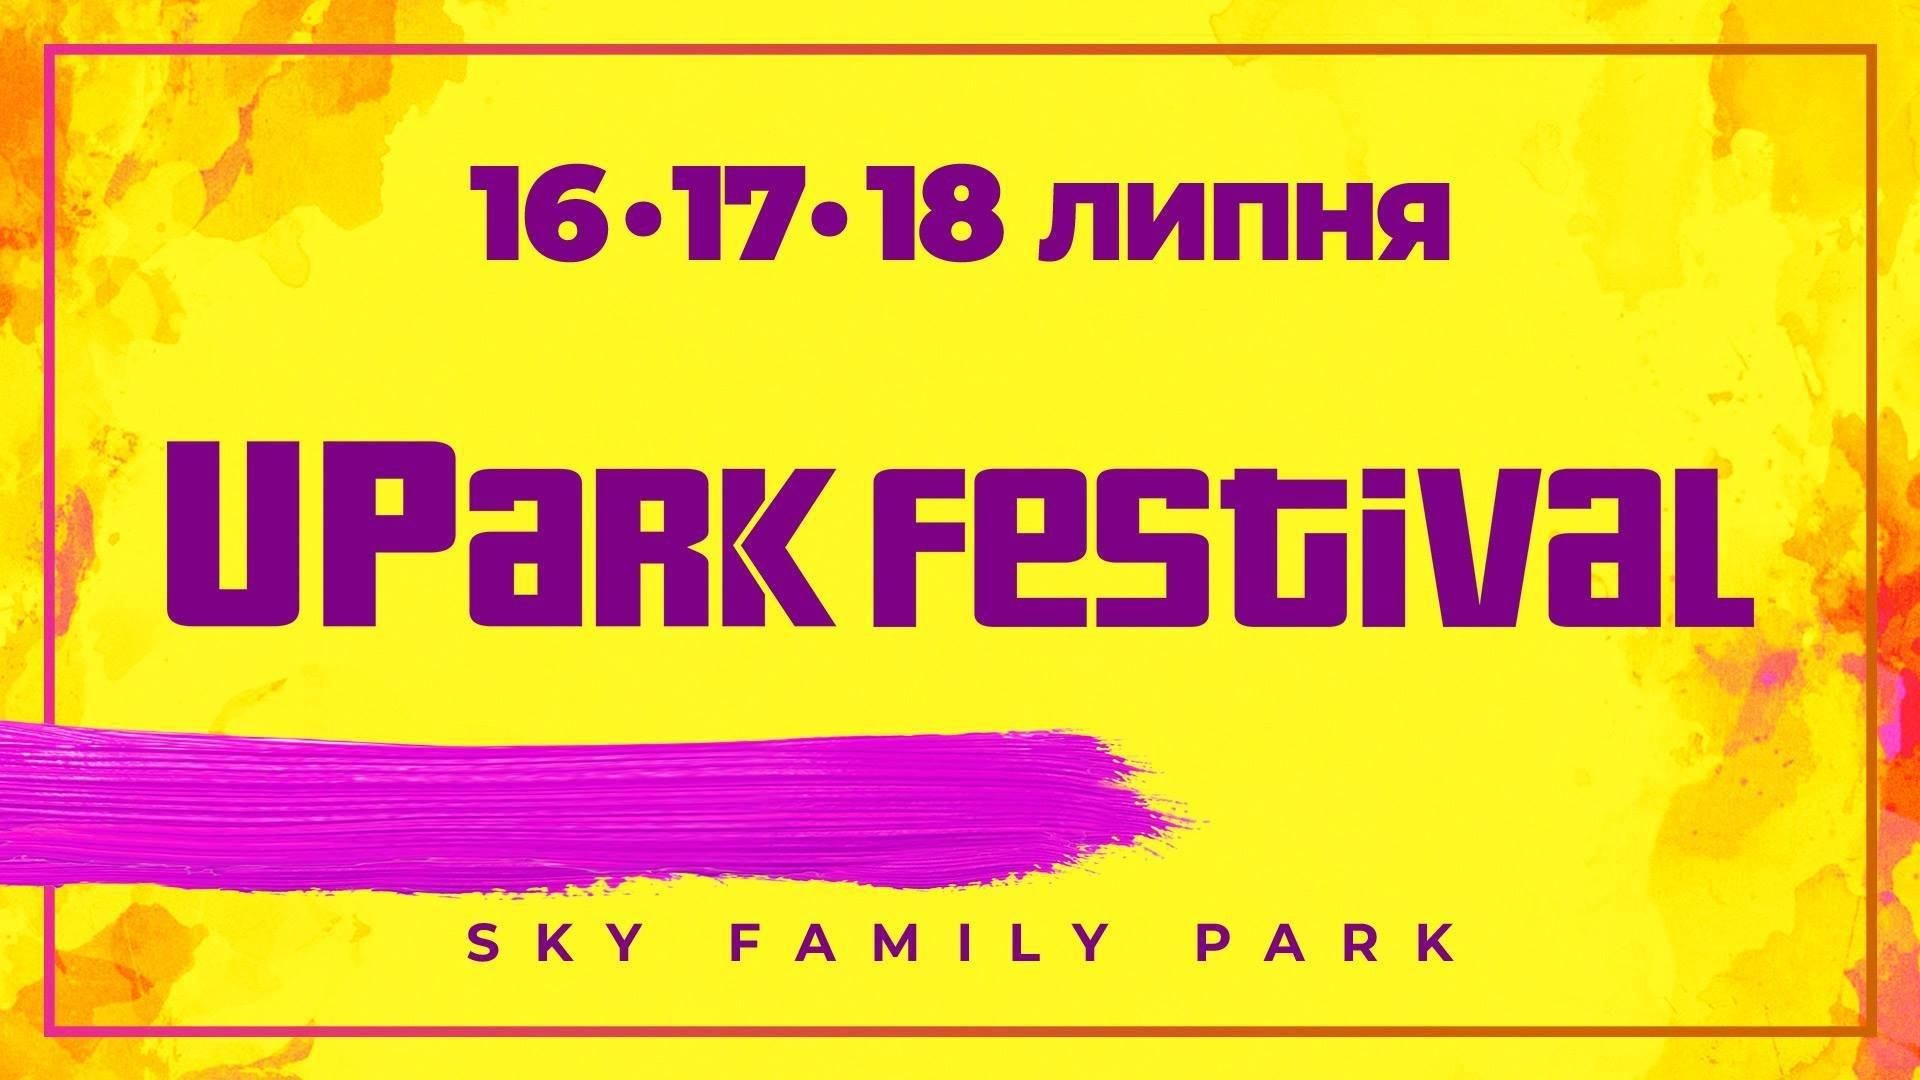  UPark Festival 2019 Киев – расписание на все дни, участники, цены на билеты